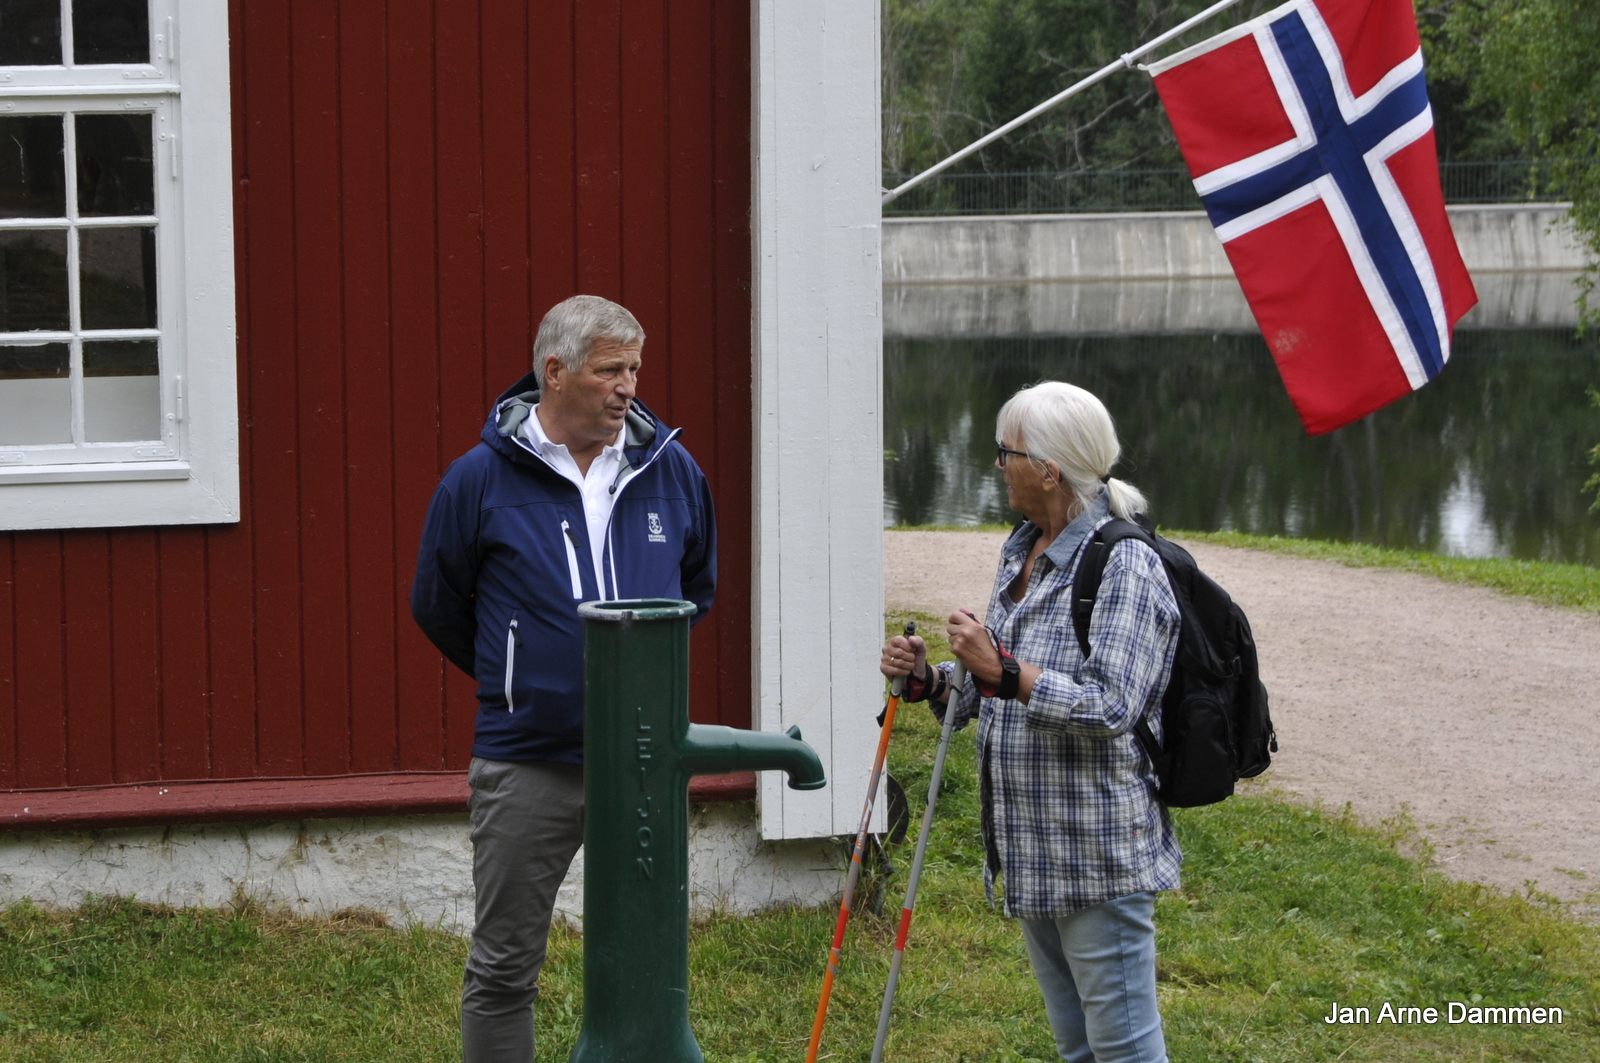 Ordfører Tore Opdahl Hansen og Fylkesmann i Buskerud Helen Bjørnøy ved Blektjernstua. Foto Jan Arne Dammen